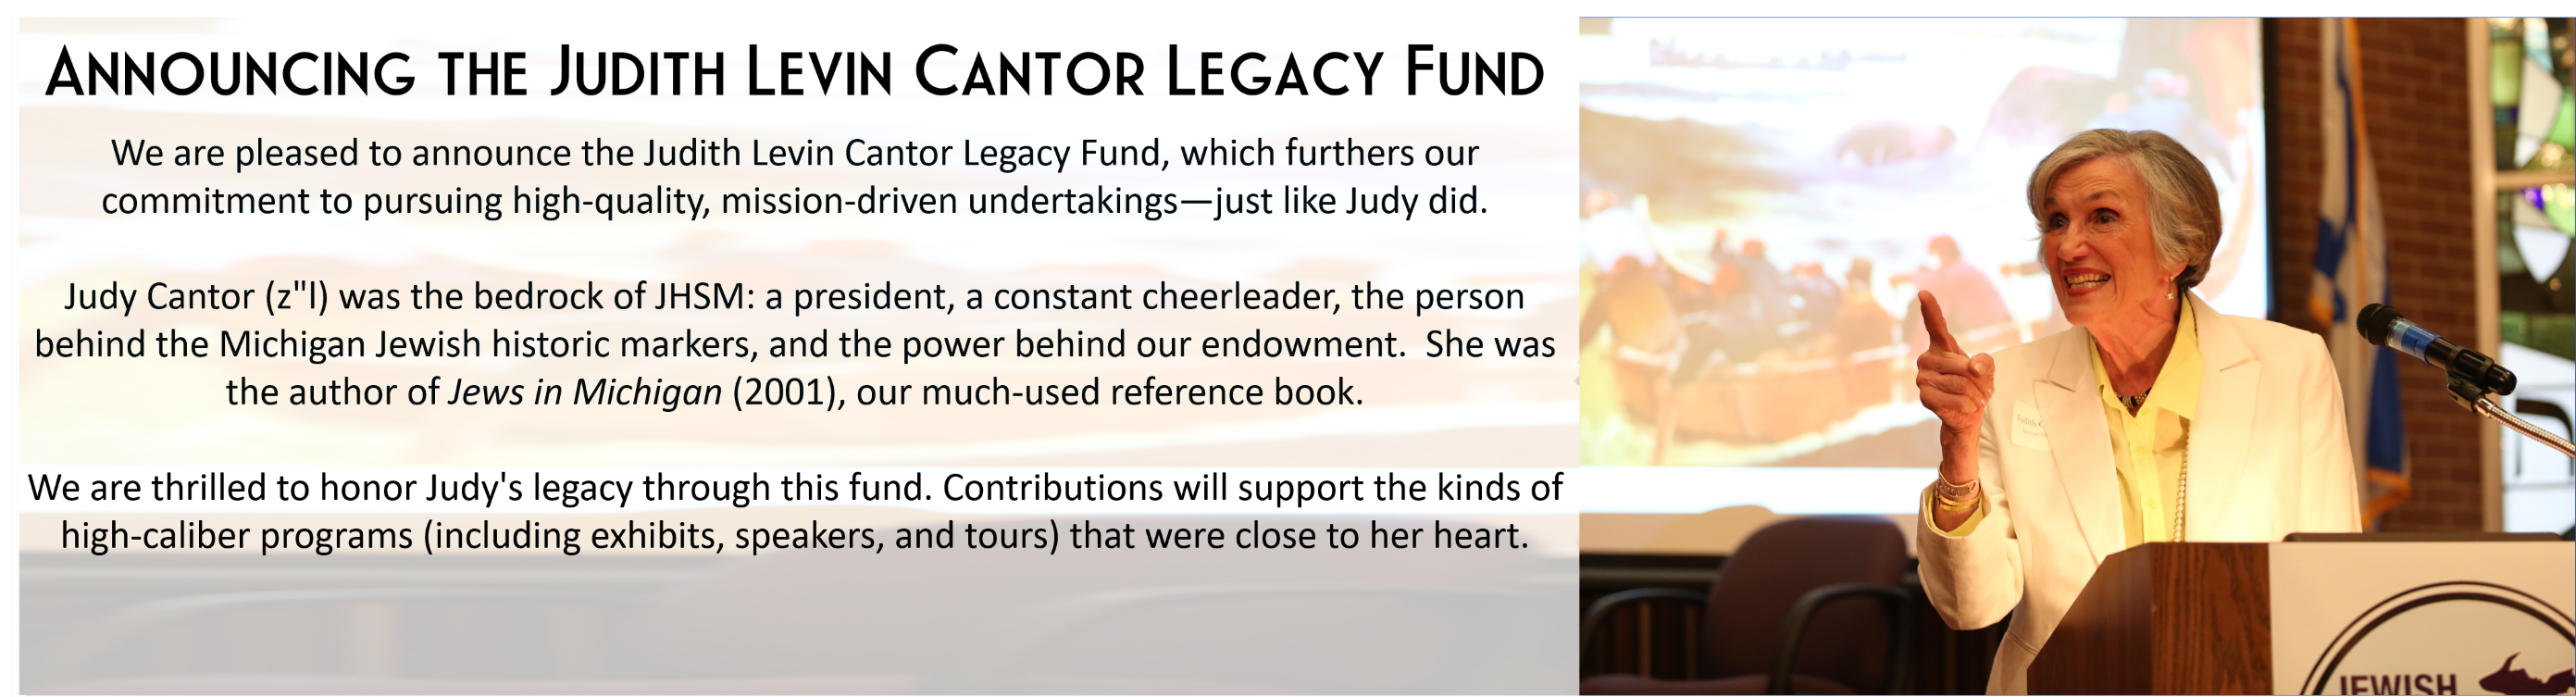 Judy Cantor Legacy Fund